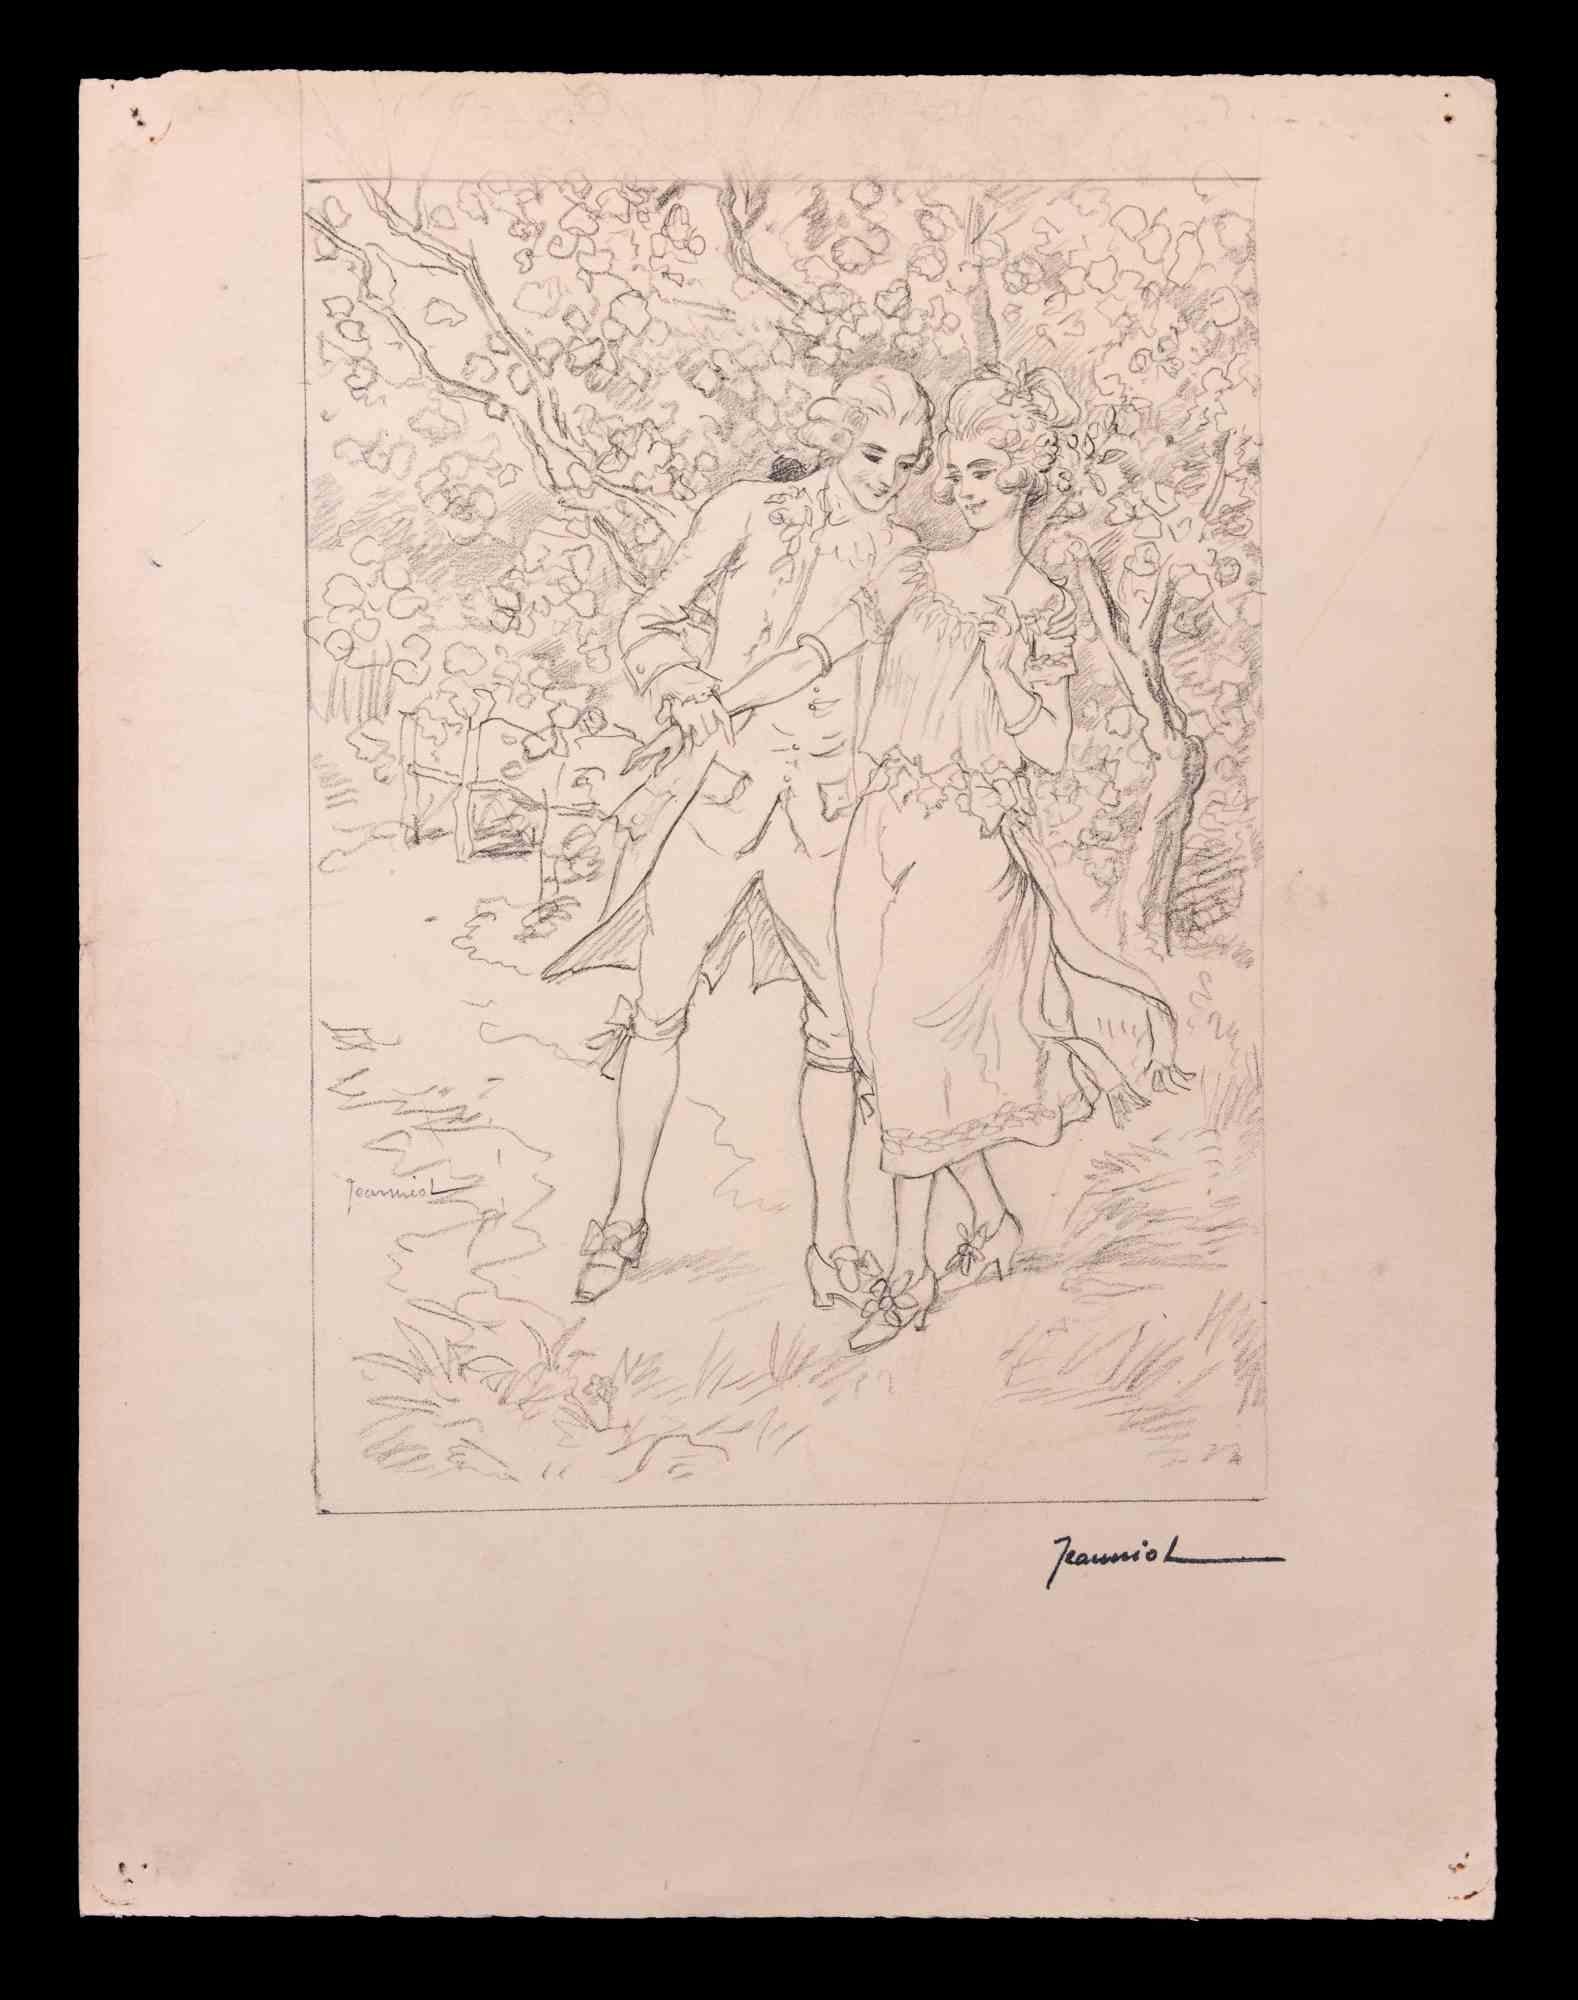 Junge Familie ist eine Original-Zeichnung auf Papier des Malers Pierre Georges Jeanniot (1848-1934).

Zeichnen mit Bleistift.

Handsigniert.

Gute Bedingungen.

Pierre-Georges Jeanniot (1848-1934) war ein schweizerisch-französischer